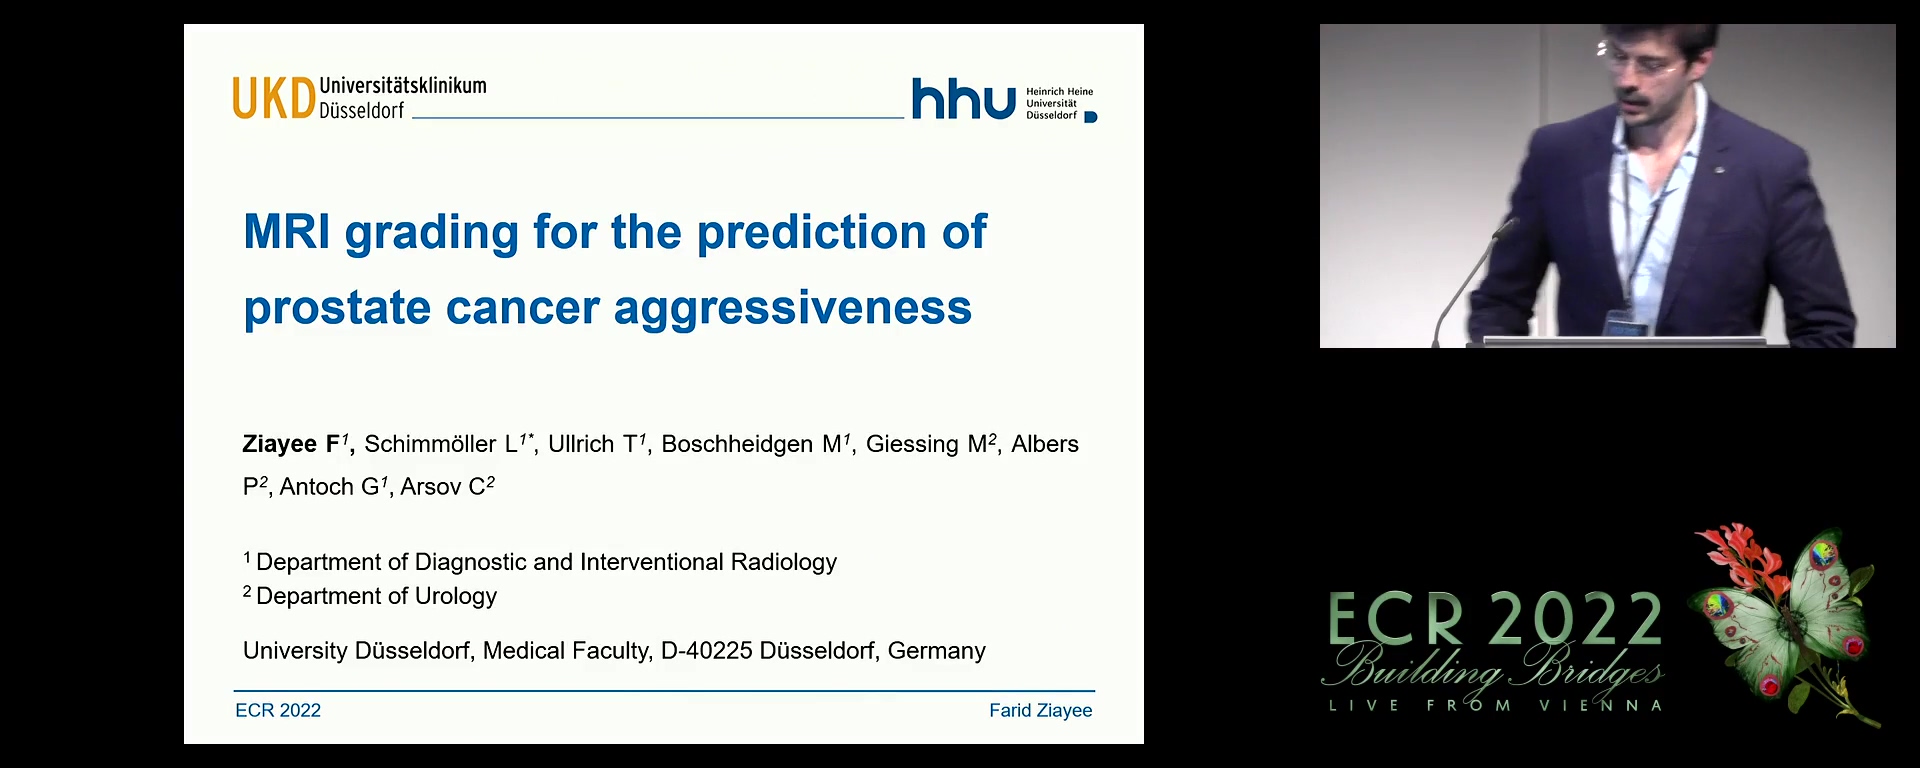 MRI grading: prediction of prostate cancer aggressiveness - Farid Ziayee, Düsseldorf / DE